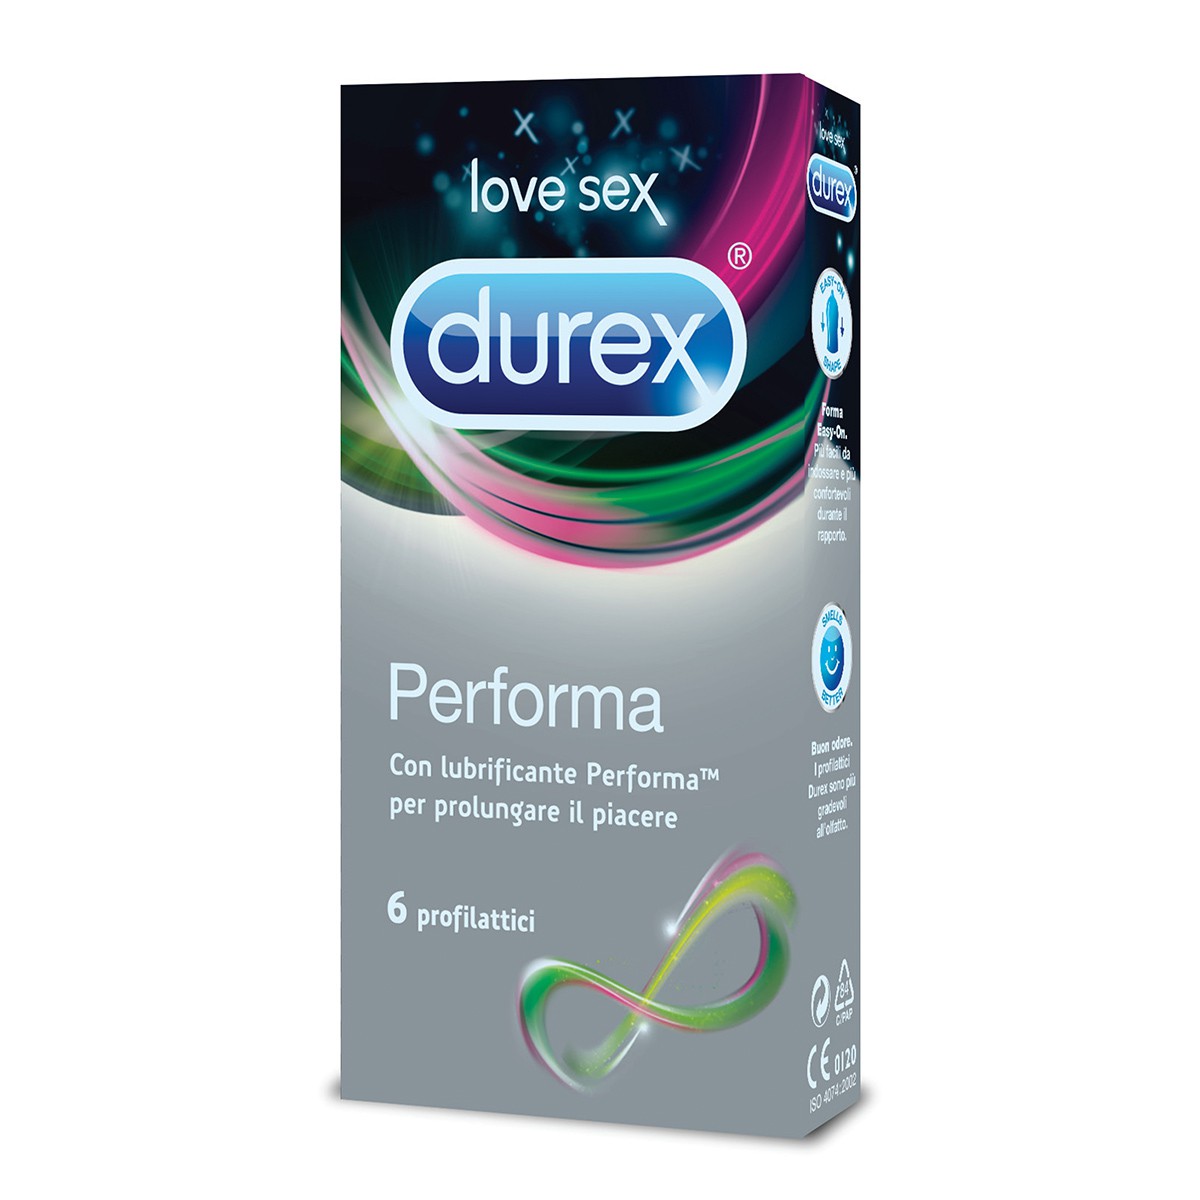 DUREX 6 preservativi performa con lubrificante per prolungare il piacere